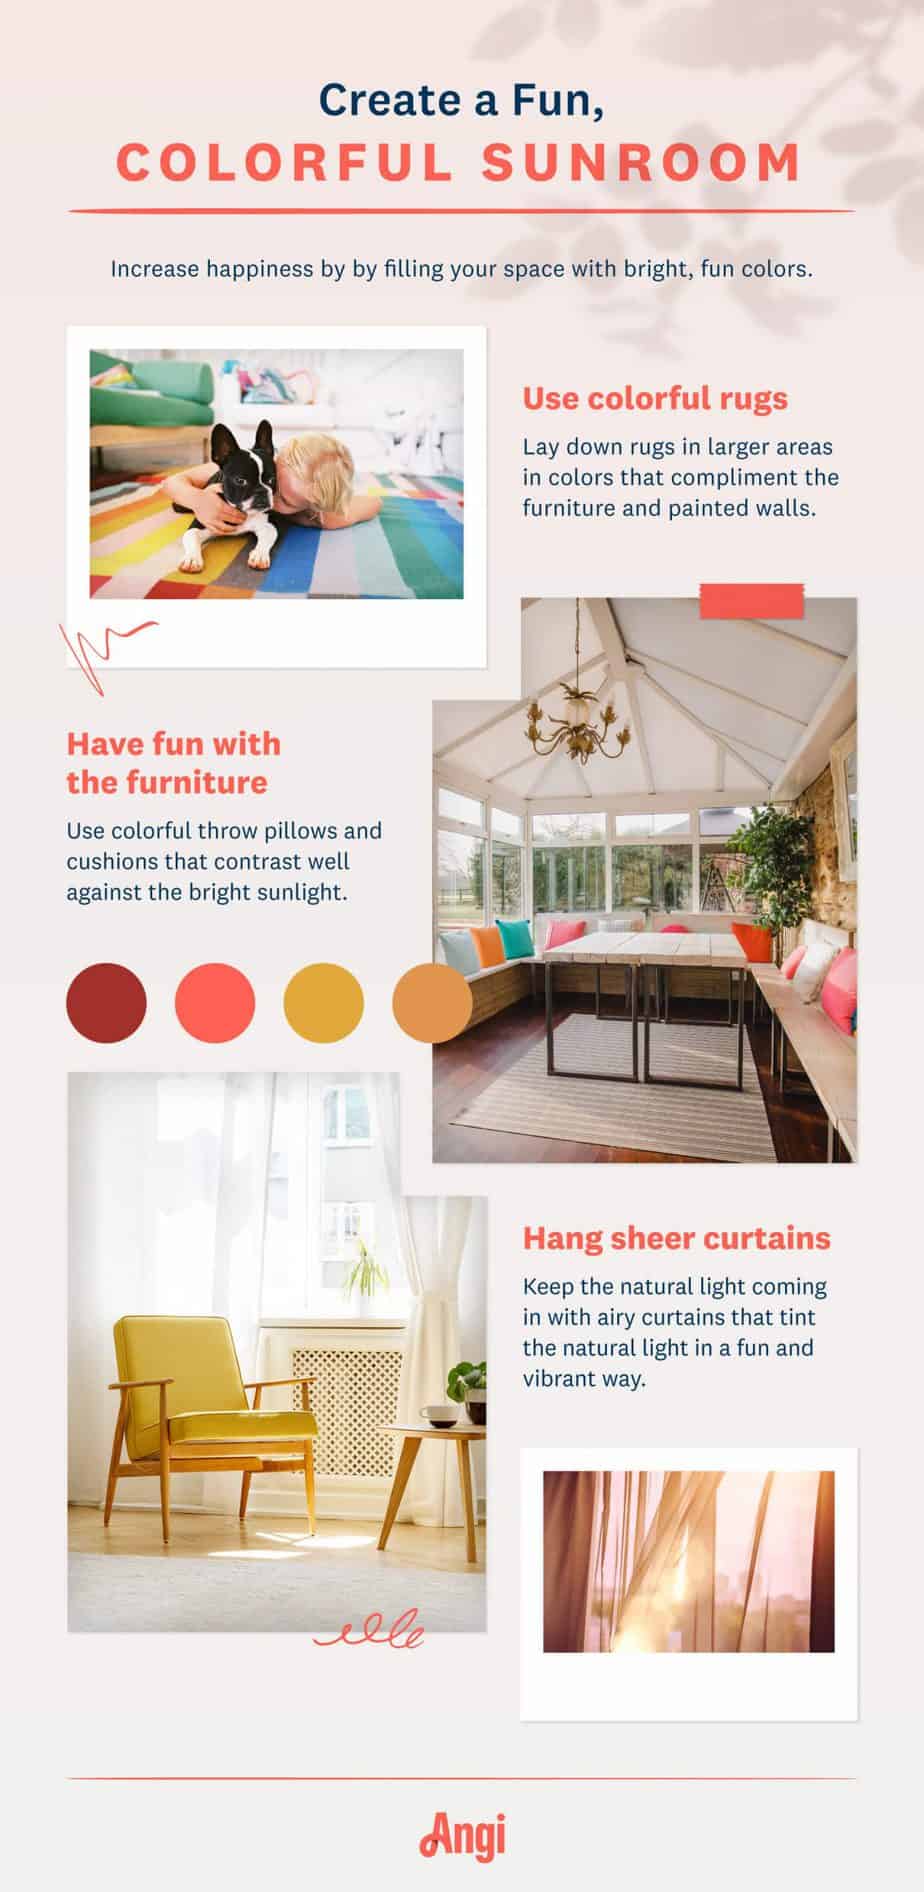 colorful-sunroom-ideas